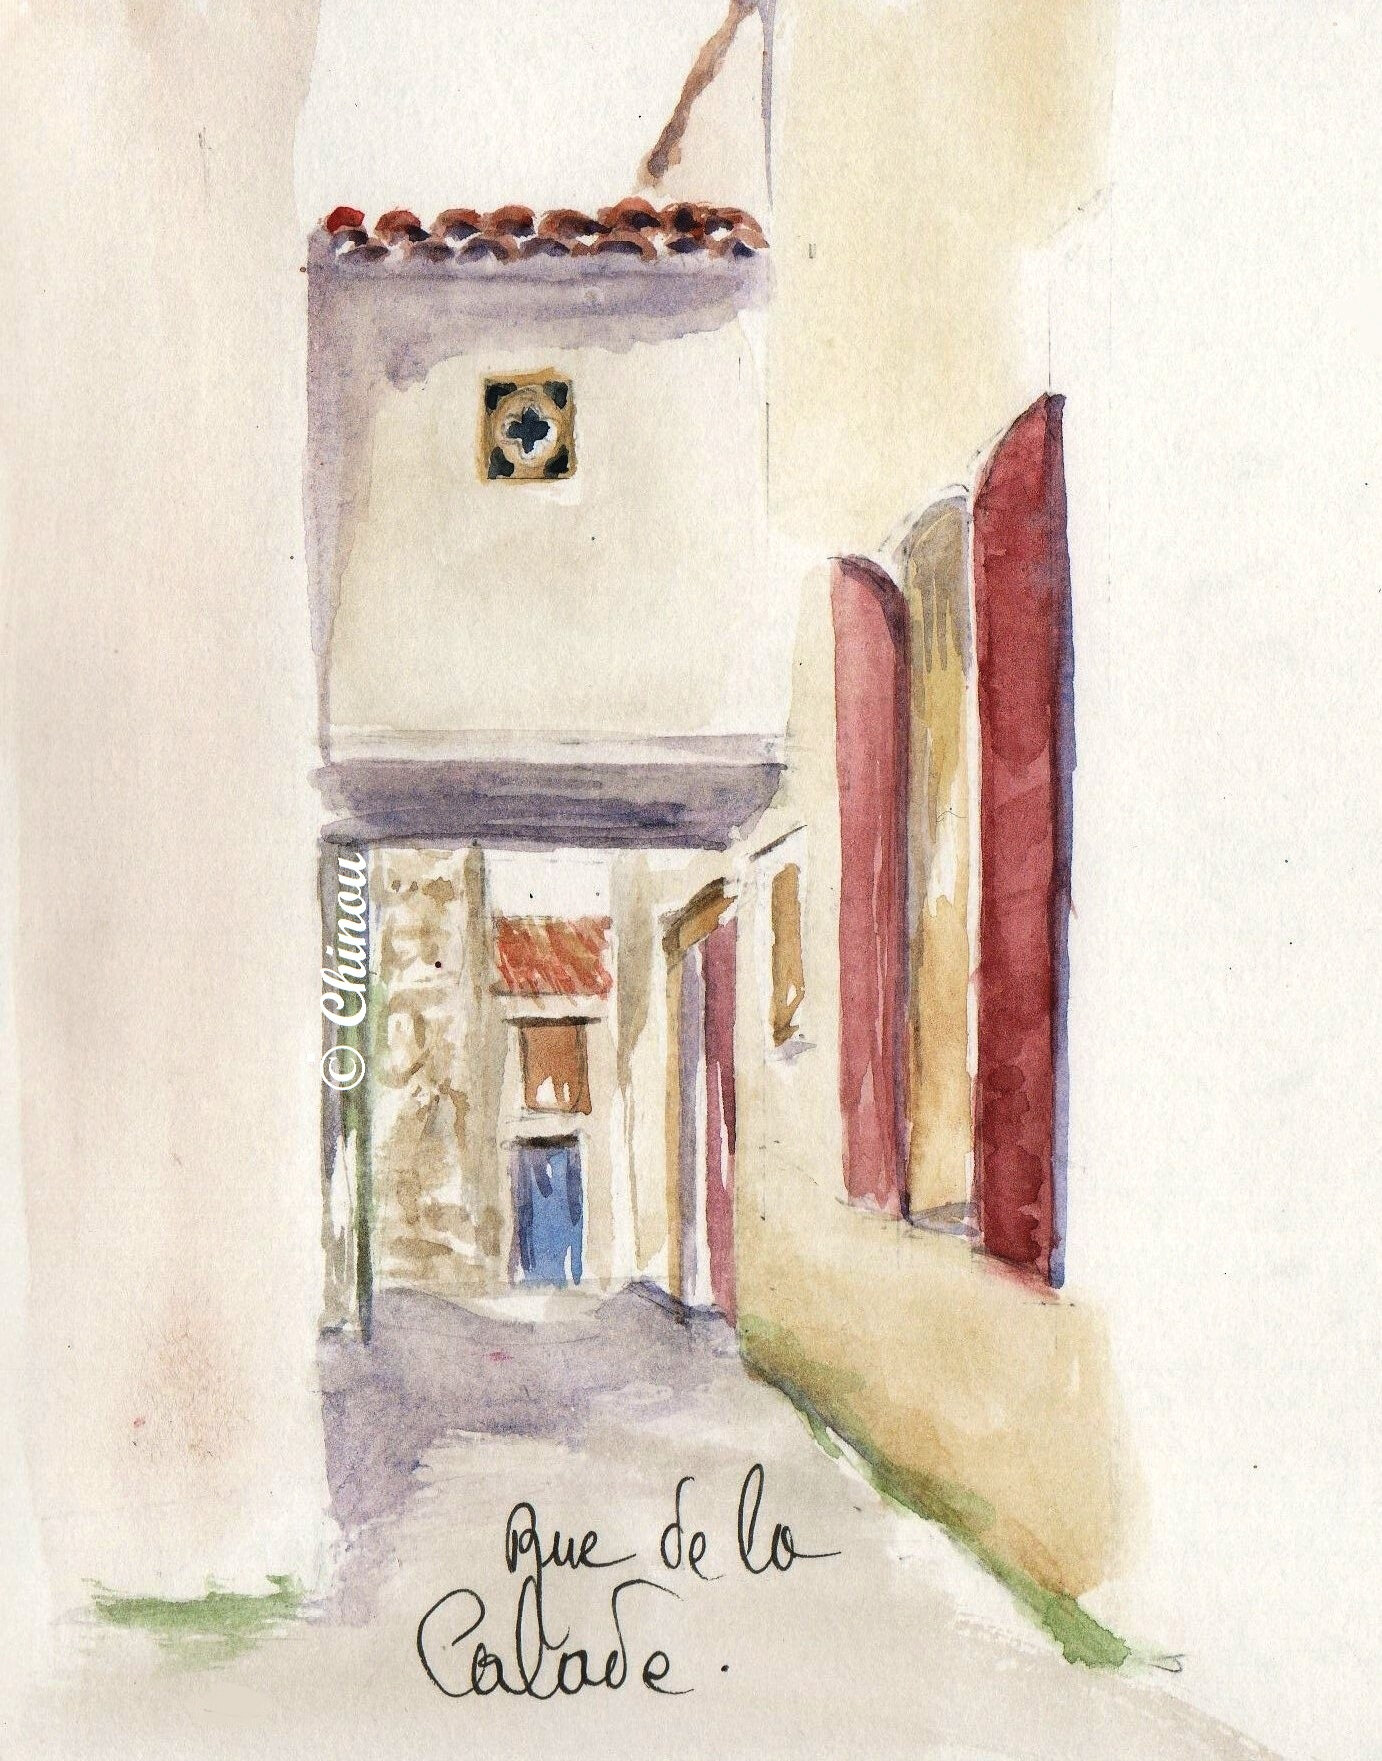  Rue de la Calade